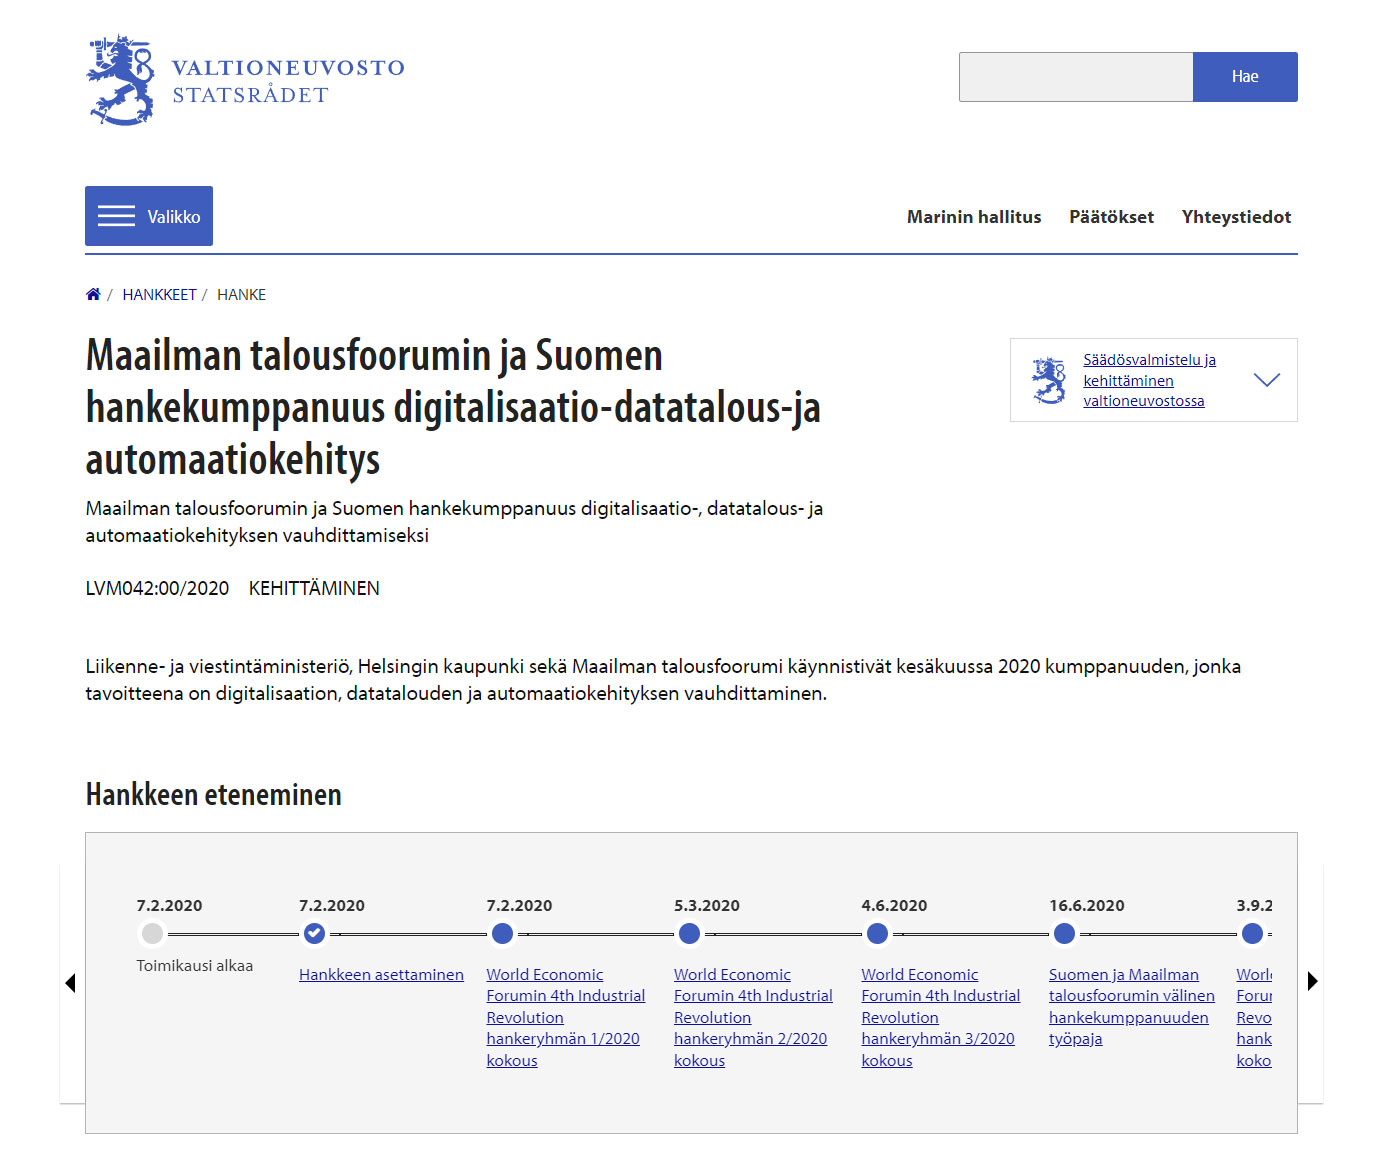 Maailman talousfoorumin ja Suomen hankekumppanuus digitalisaatio-datatalous- ja automaatiokehitys.